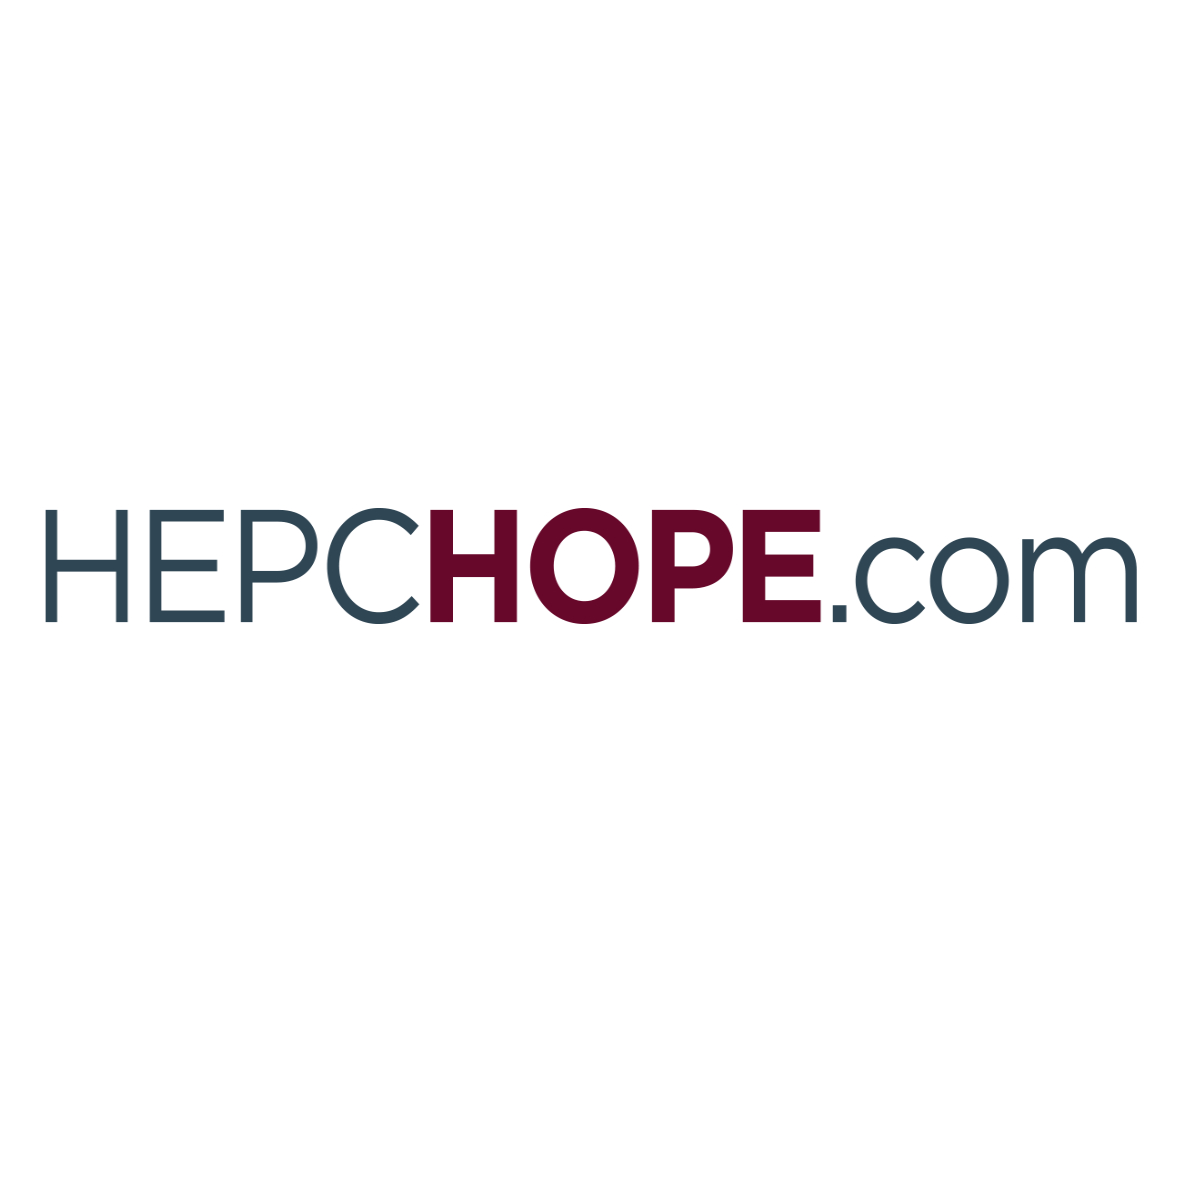 (c) Hepchope.com